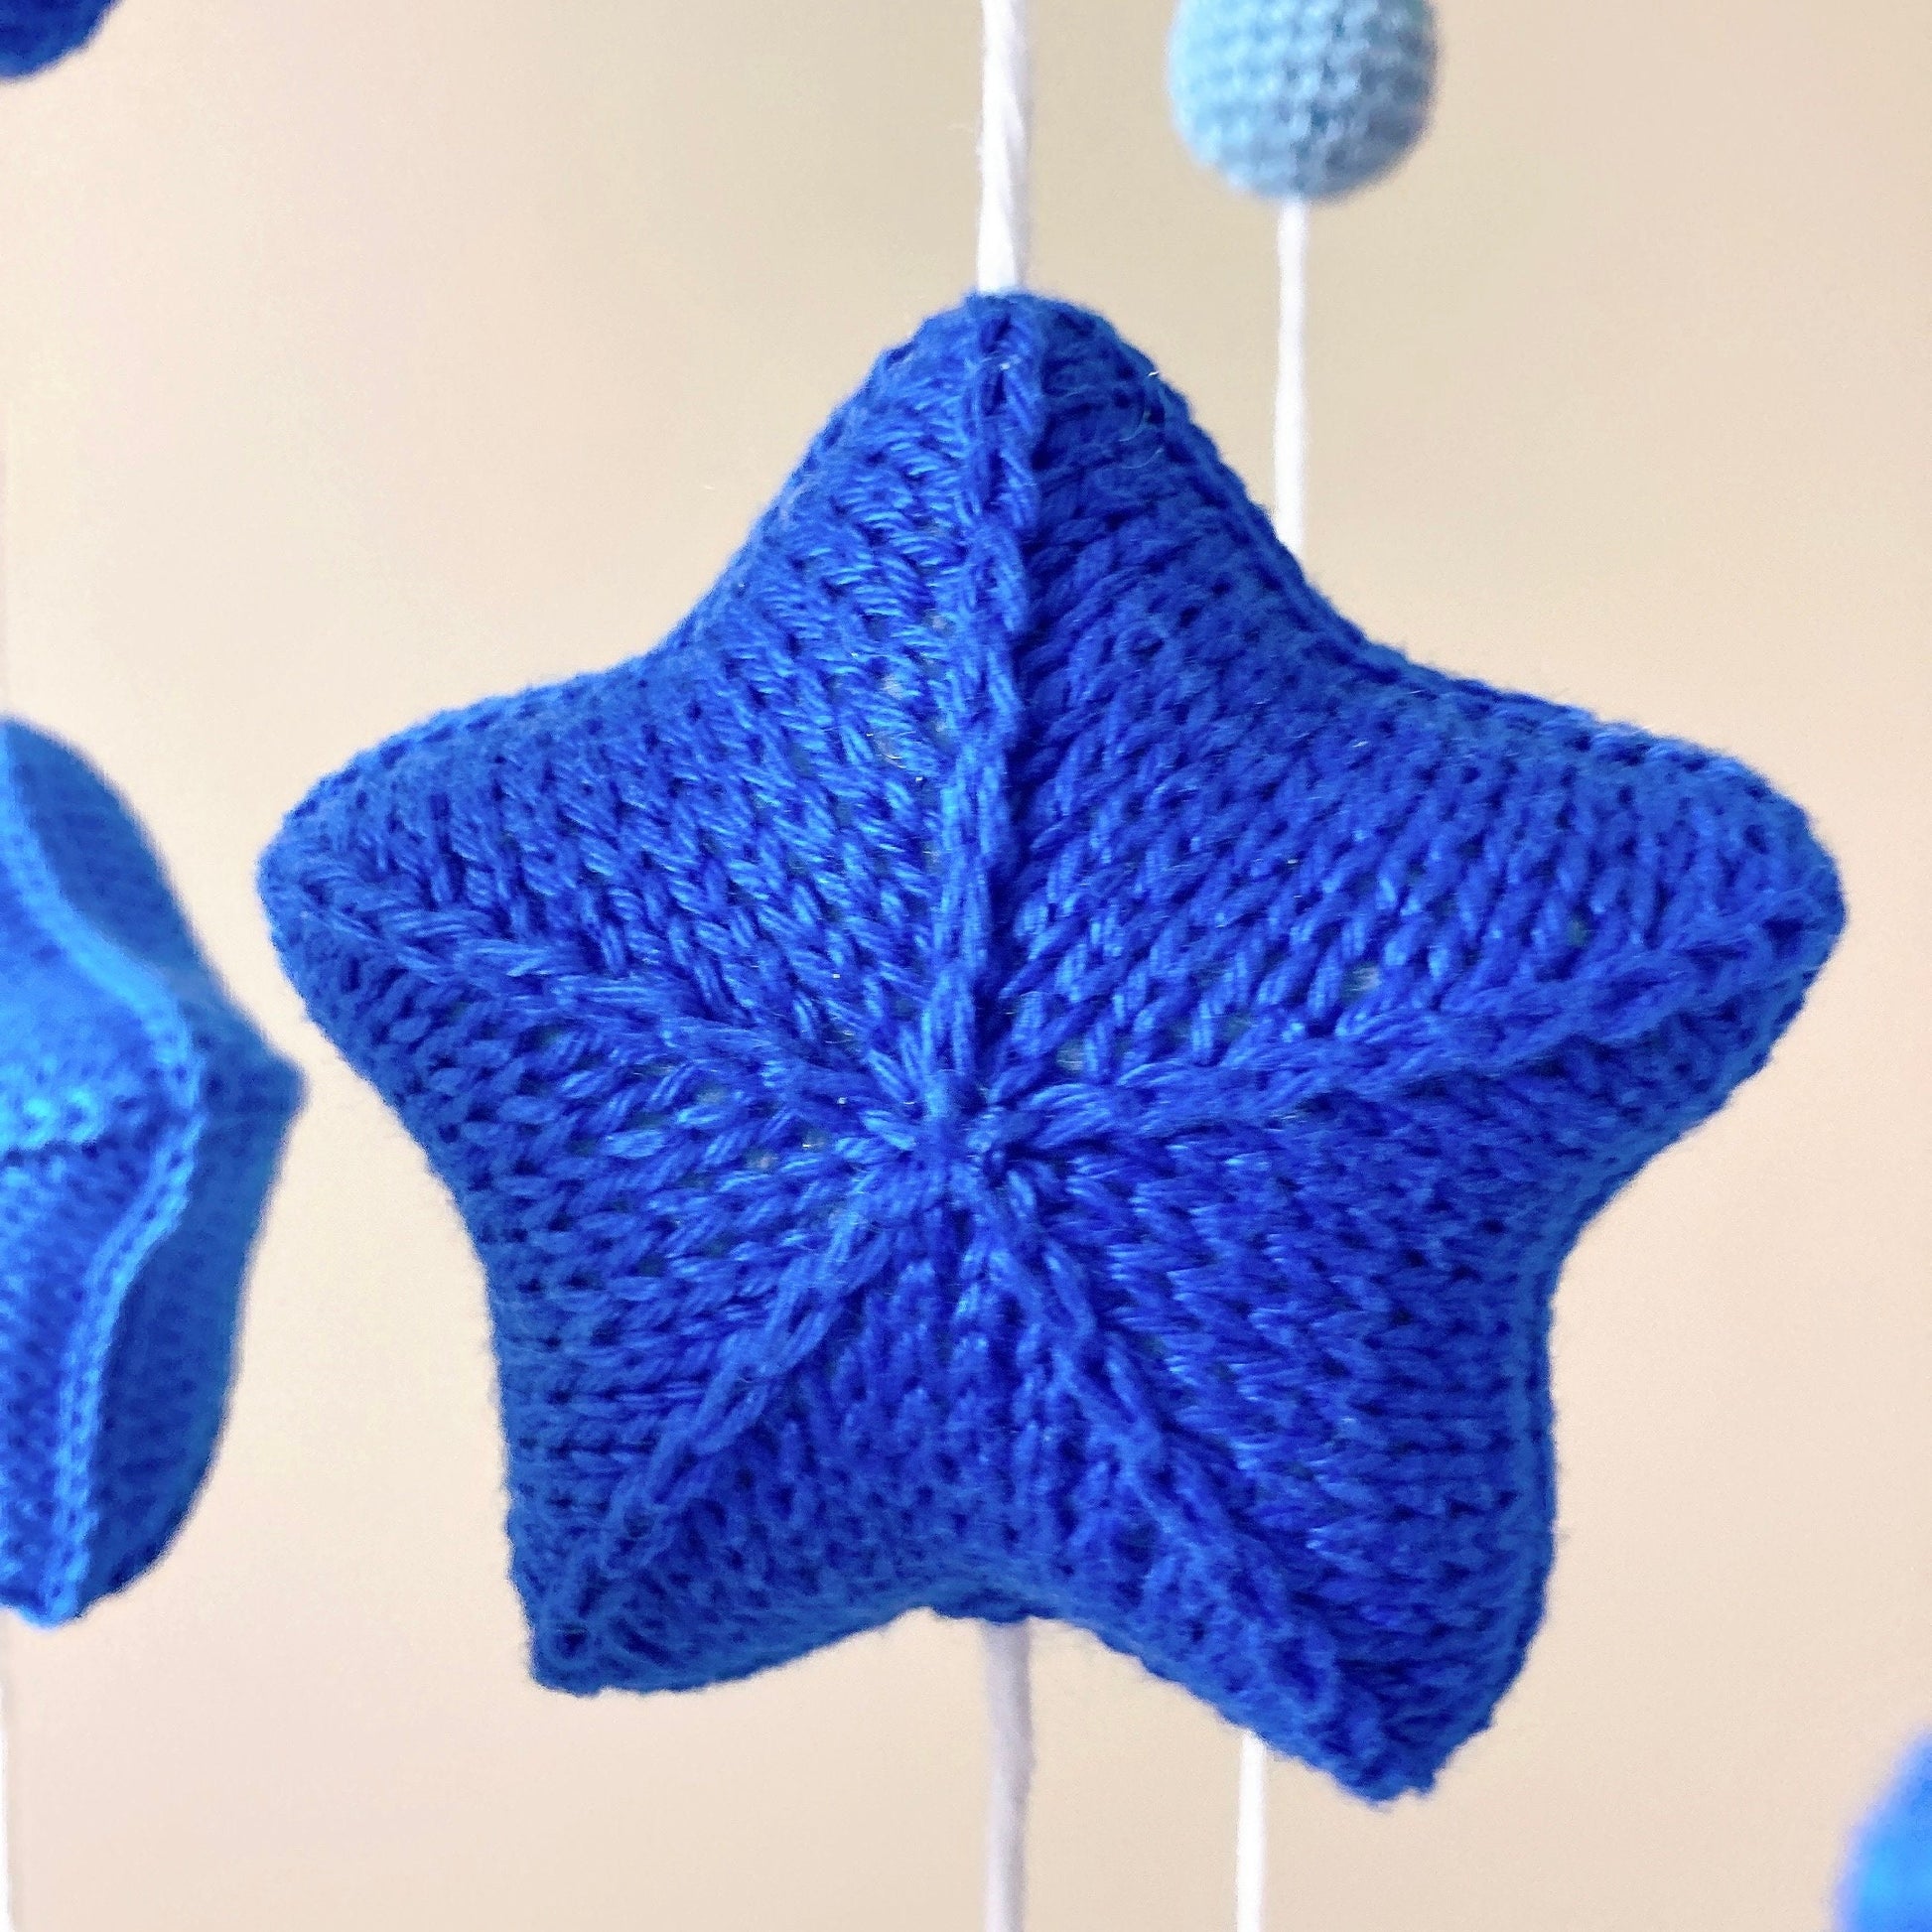 Mobile Bébé au crochet : Rêve des étoiles bleues – Fleurétoilée